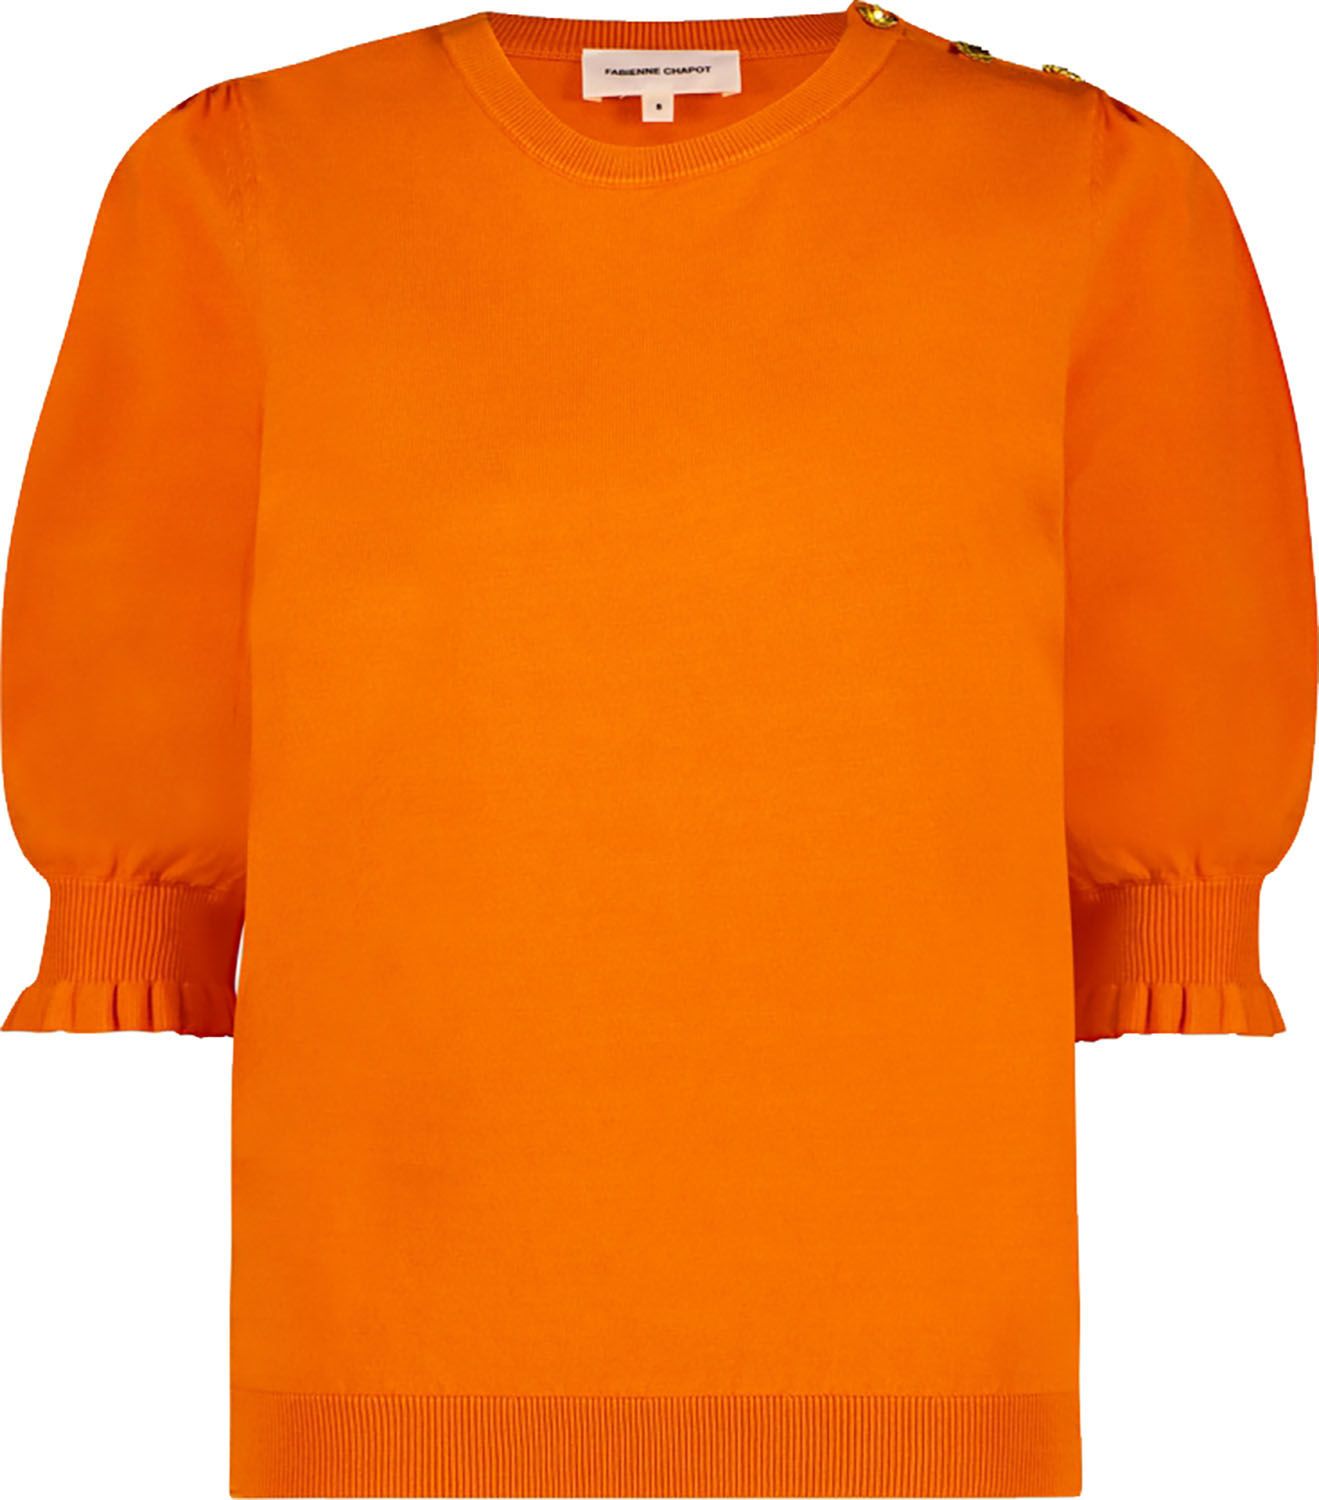 Pullover Jolly  Oranje